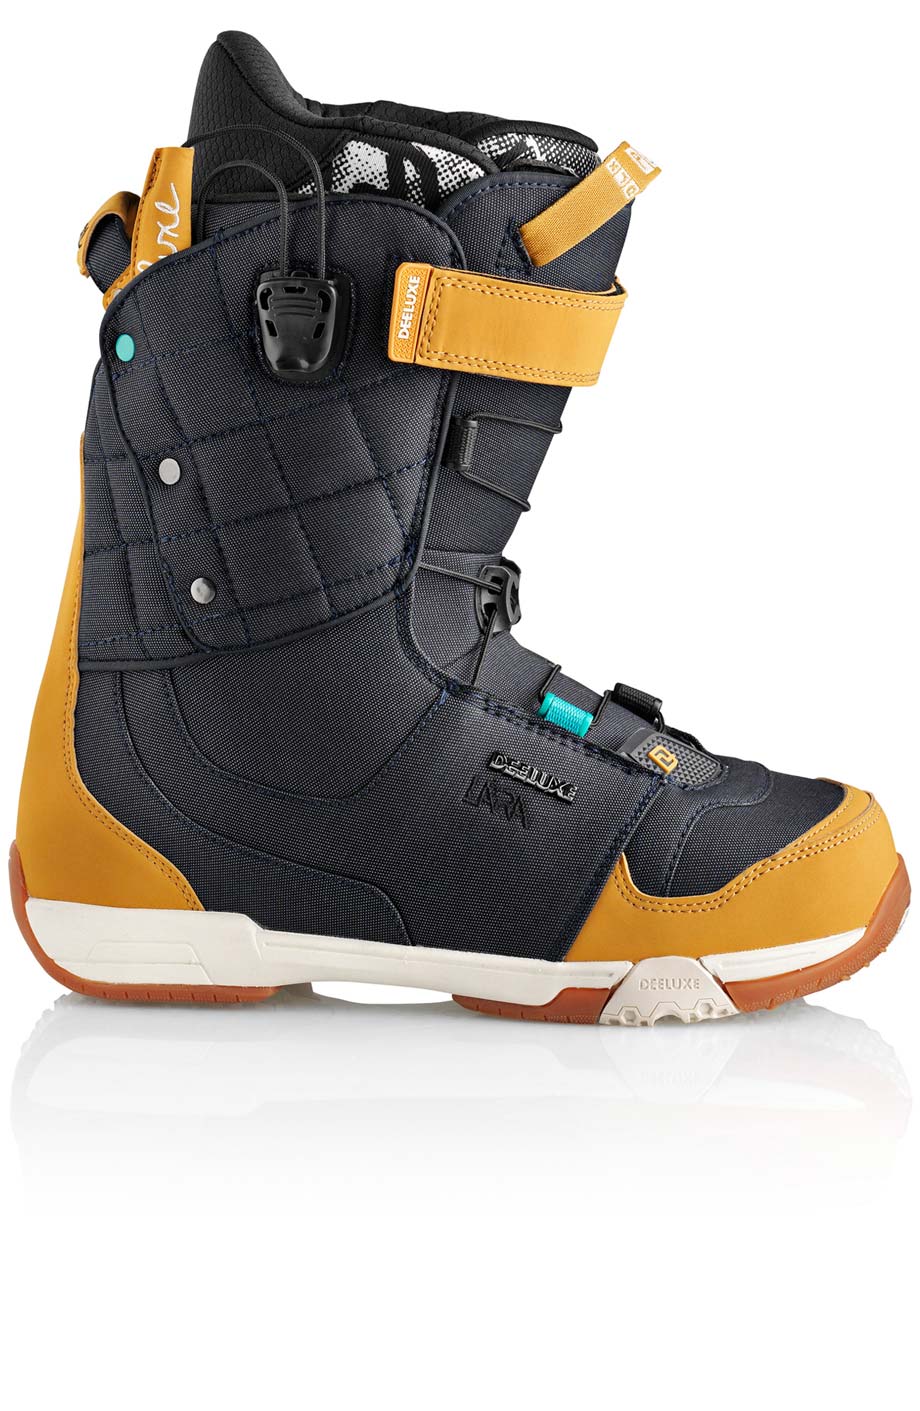 Ботинки сноубордические Deeluxe Ray Lara  размер 23,0 denim (темный джинс + беж кож.зам) 2013 год фото 